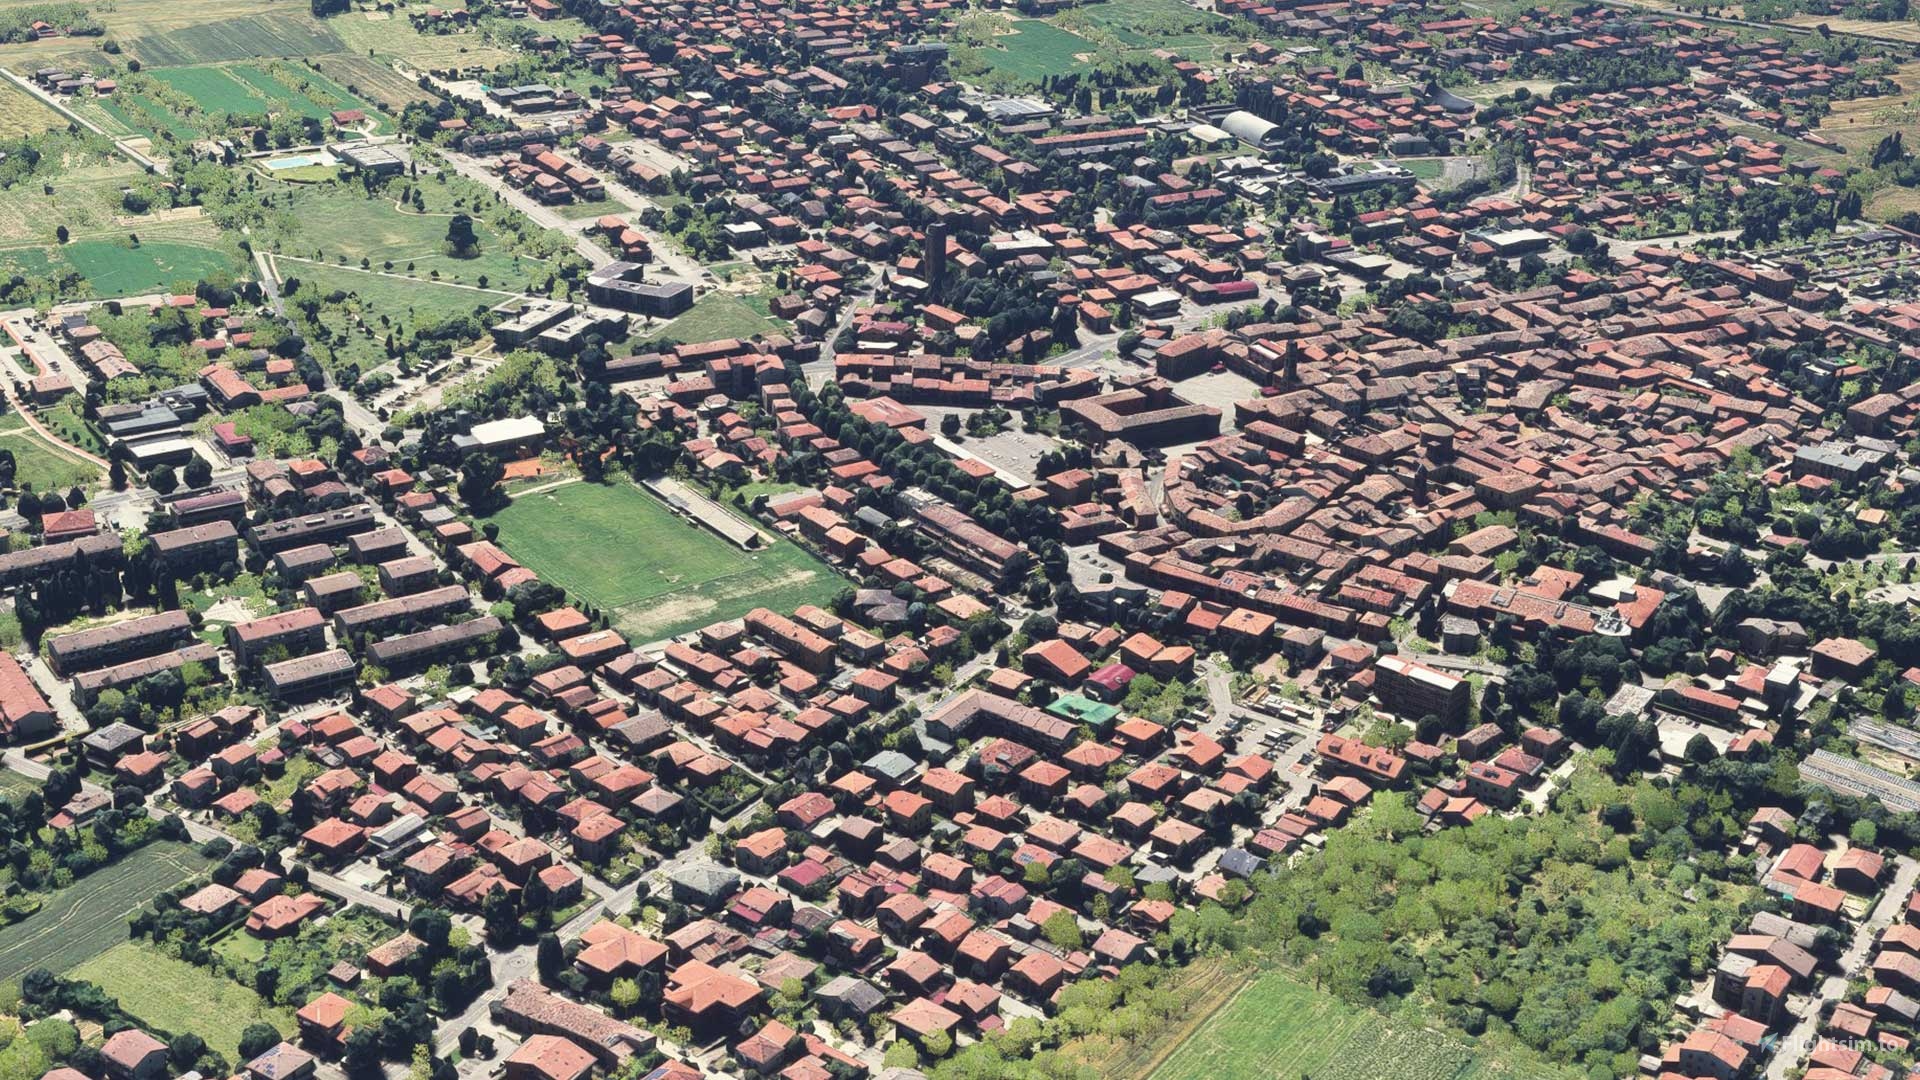 Forlimpopoli – Emilia Romagna